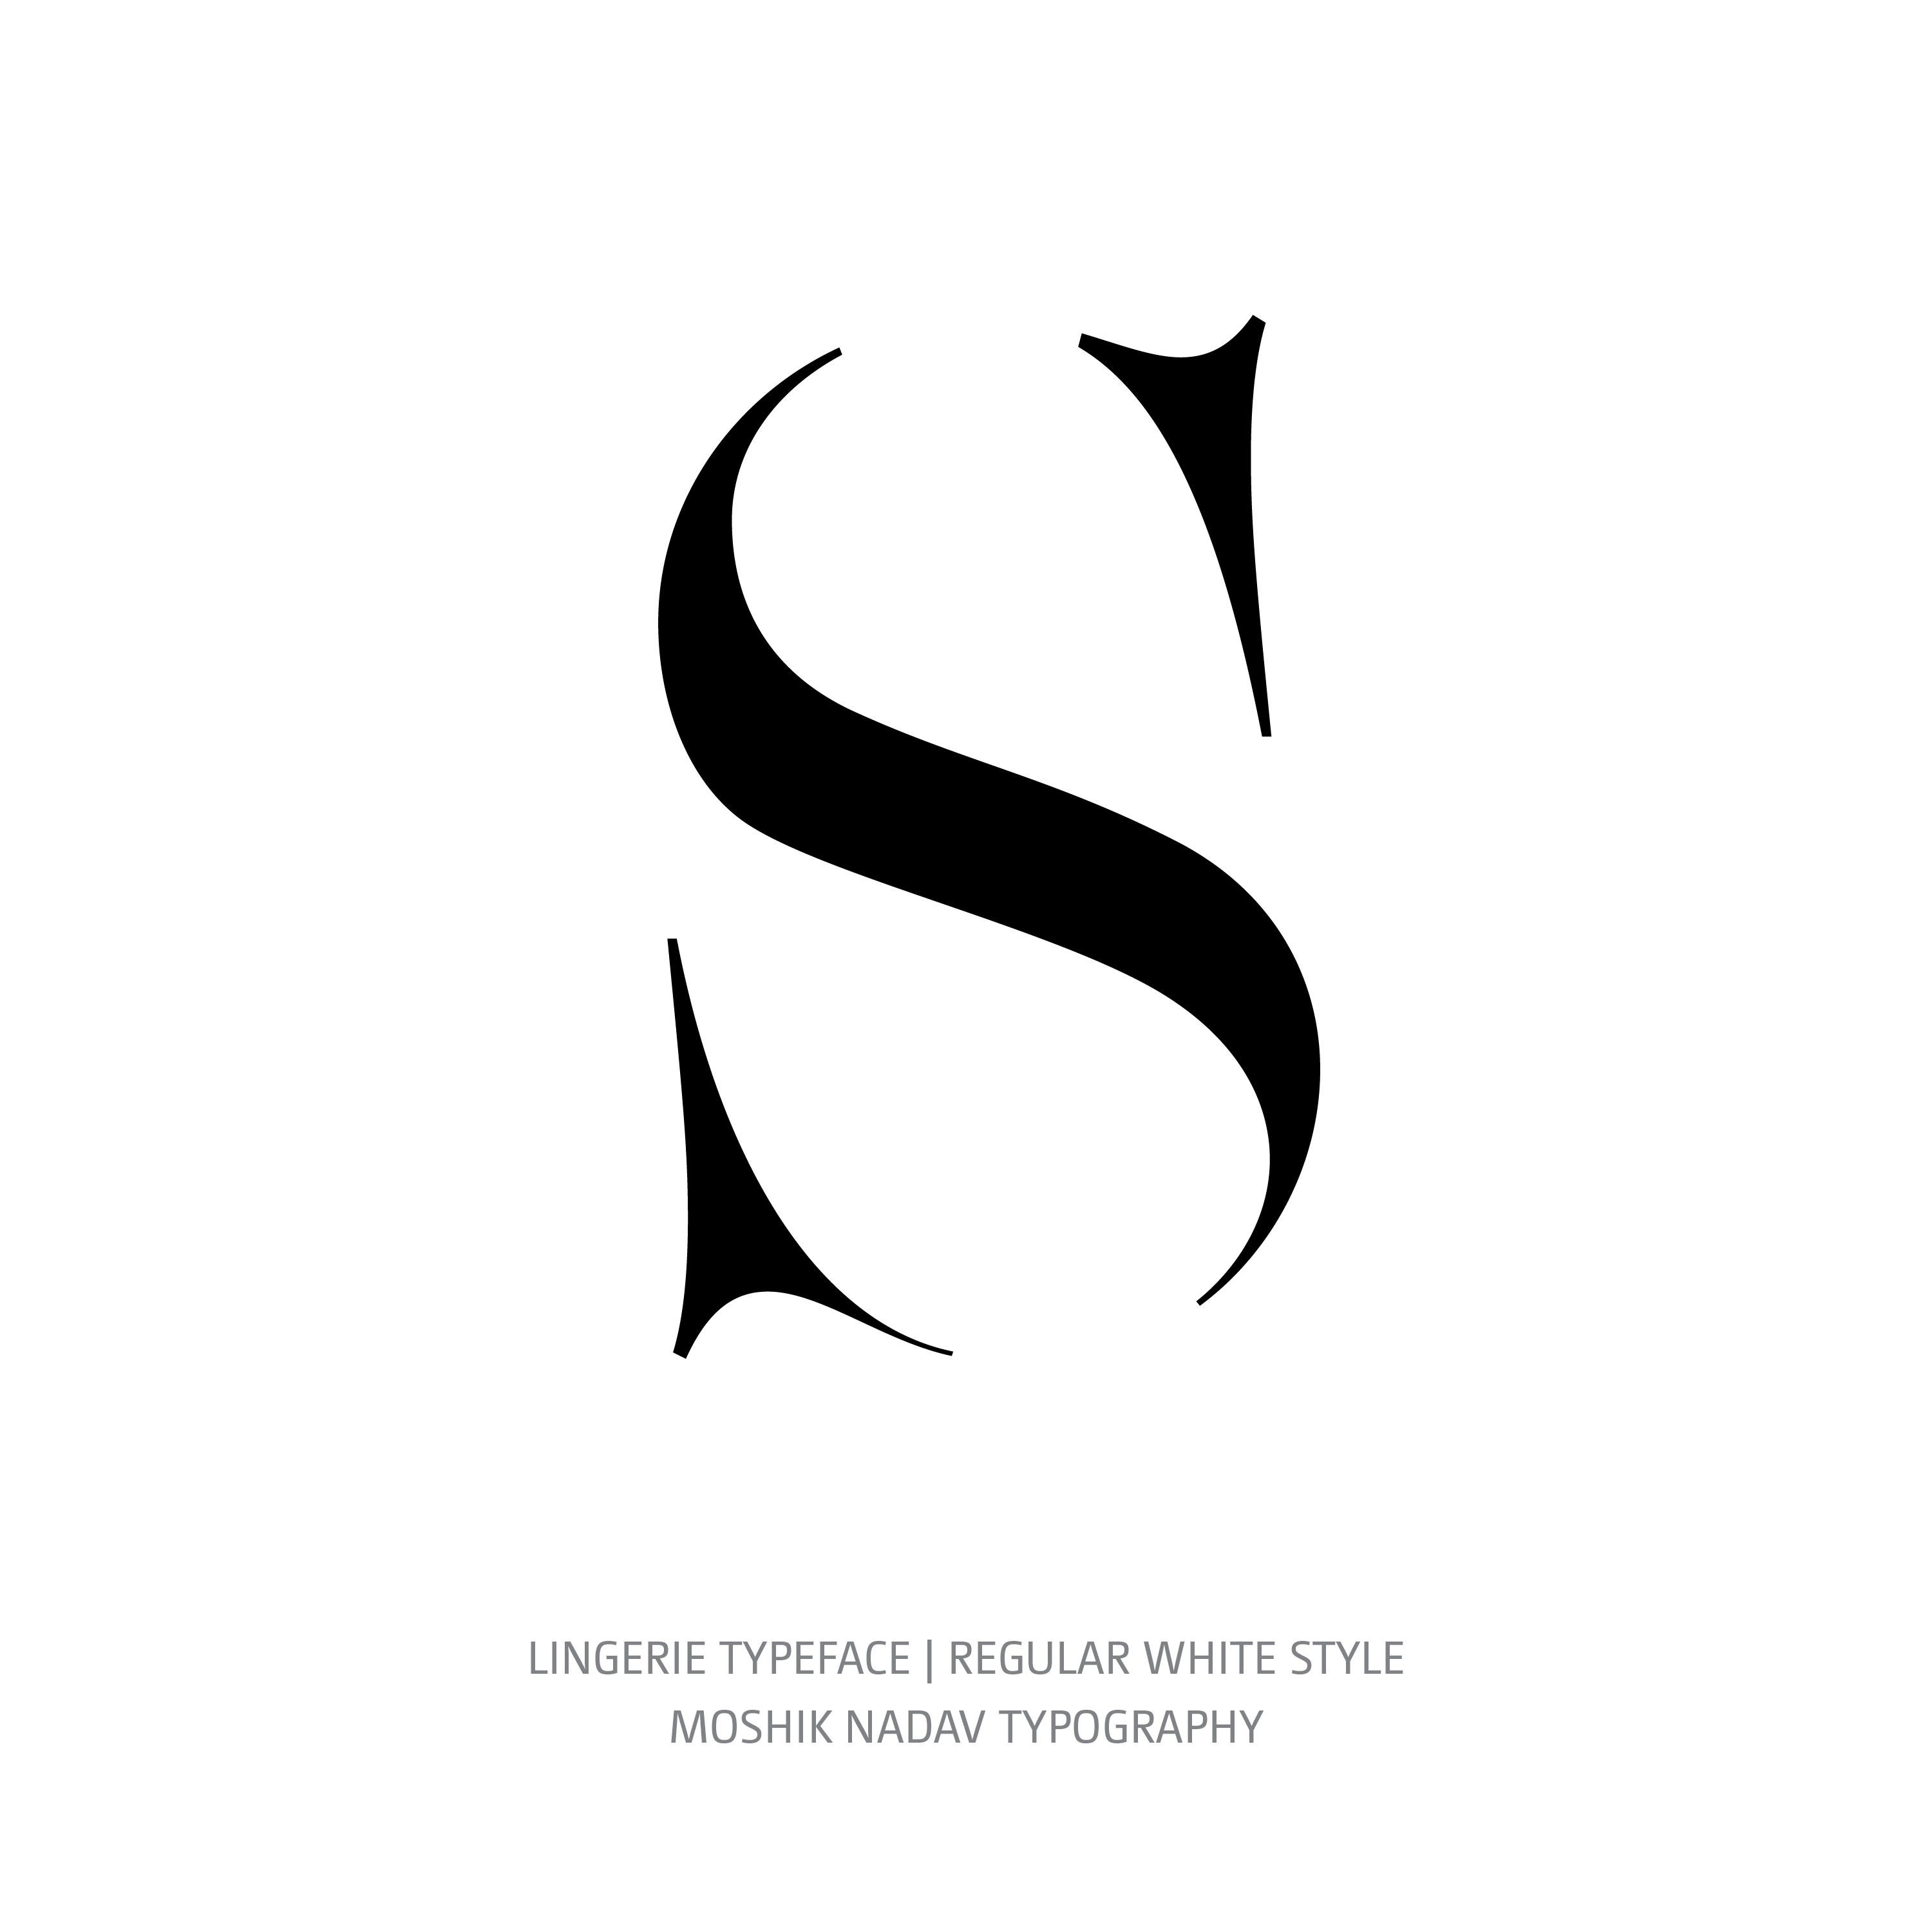 Lingerie Typeface Regular White S